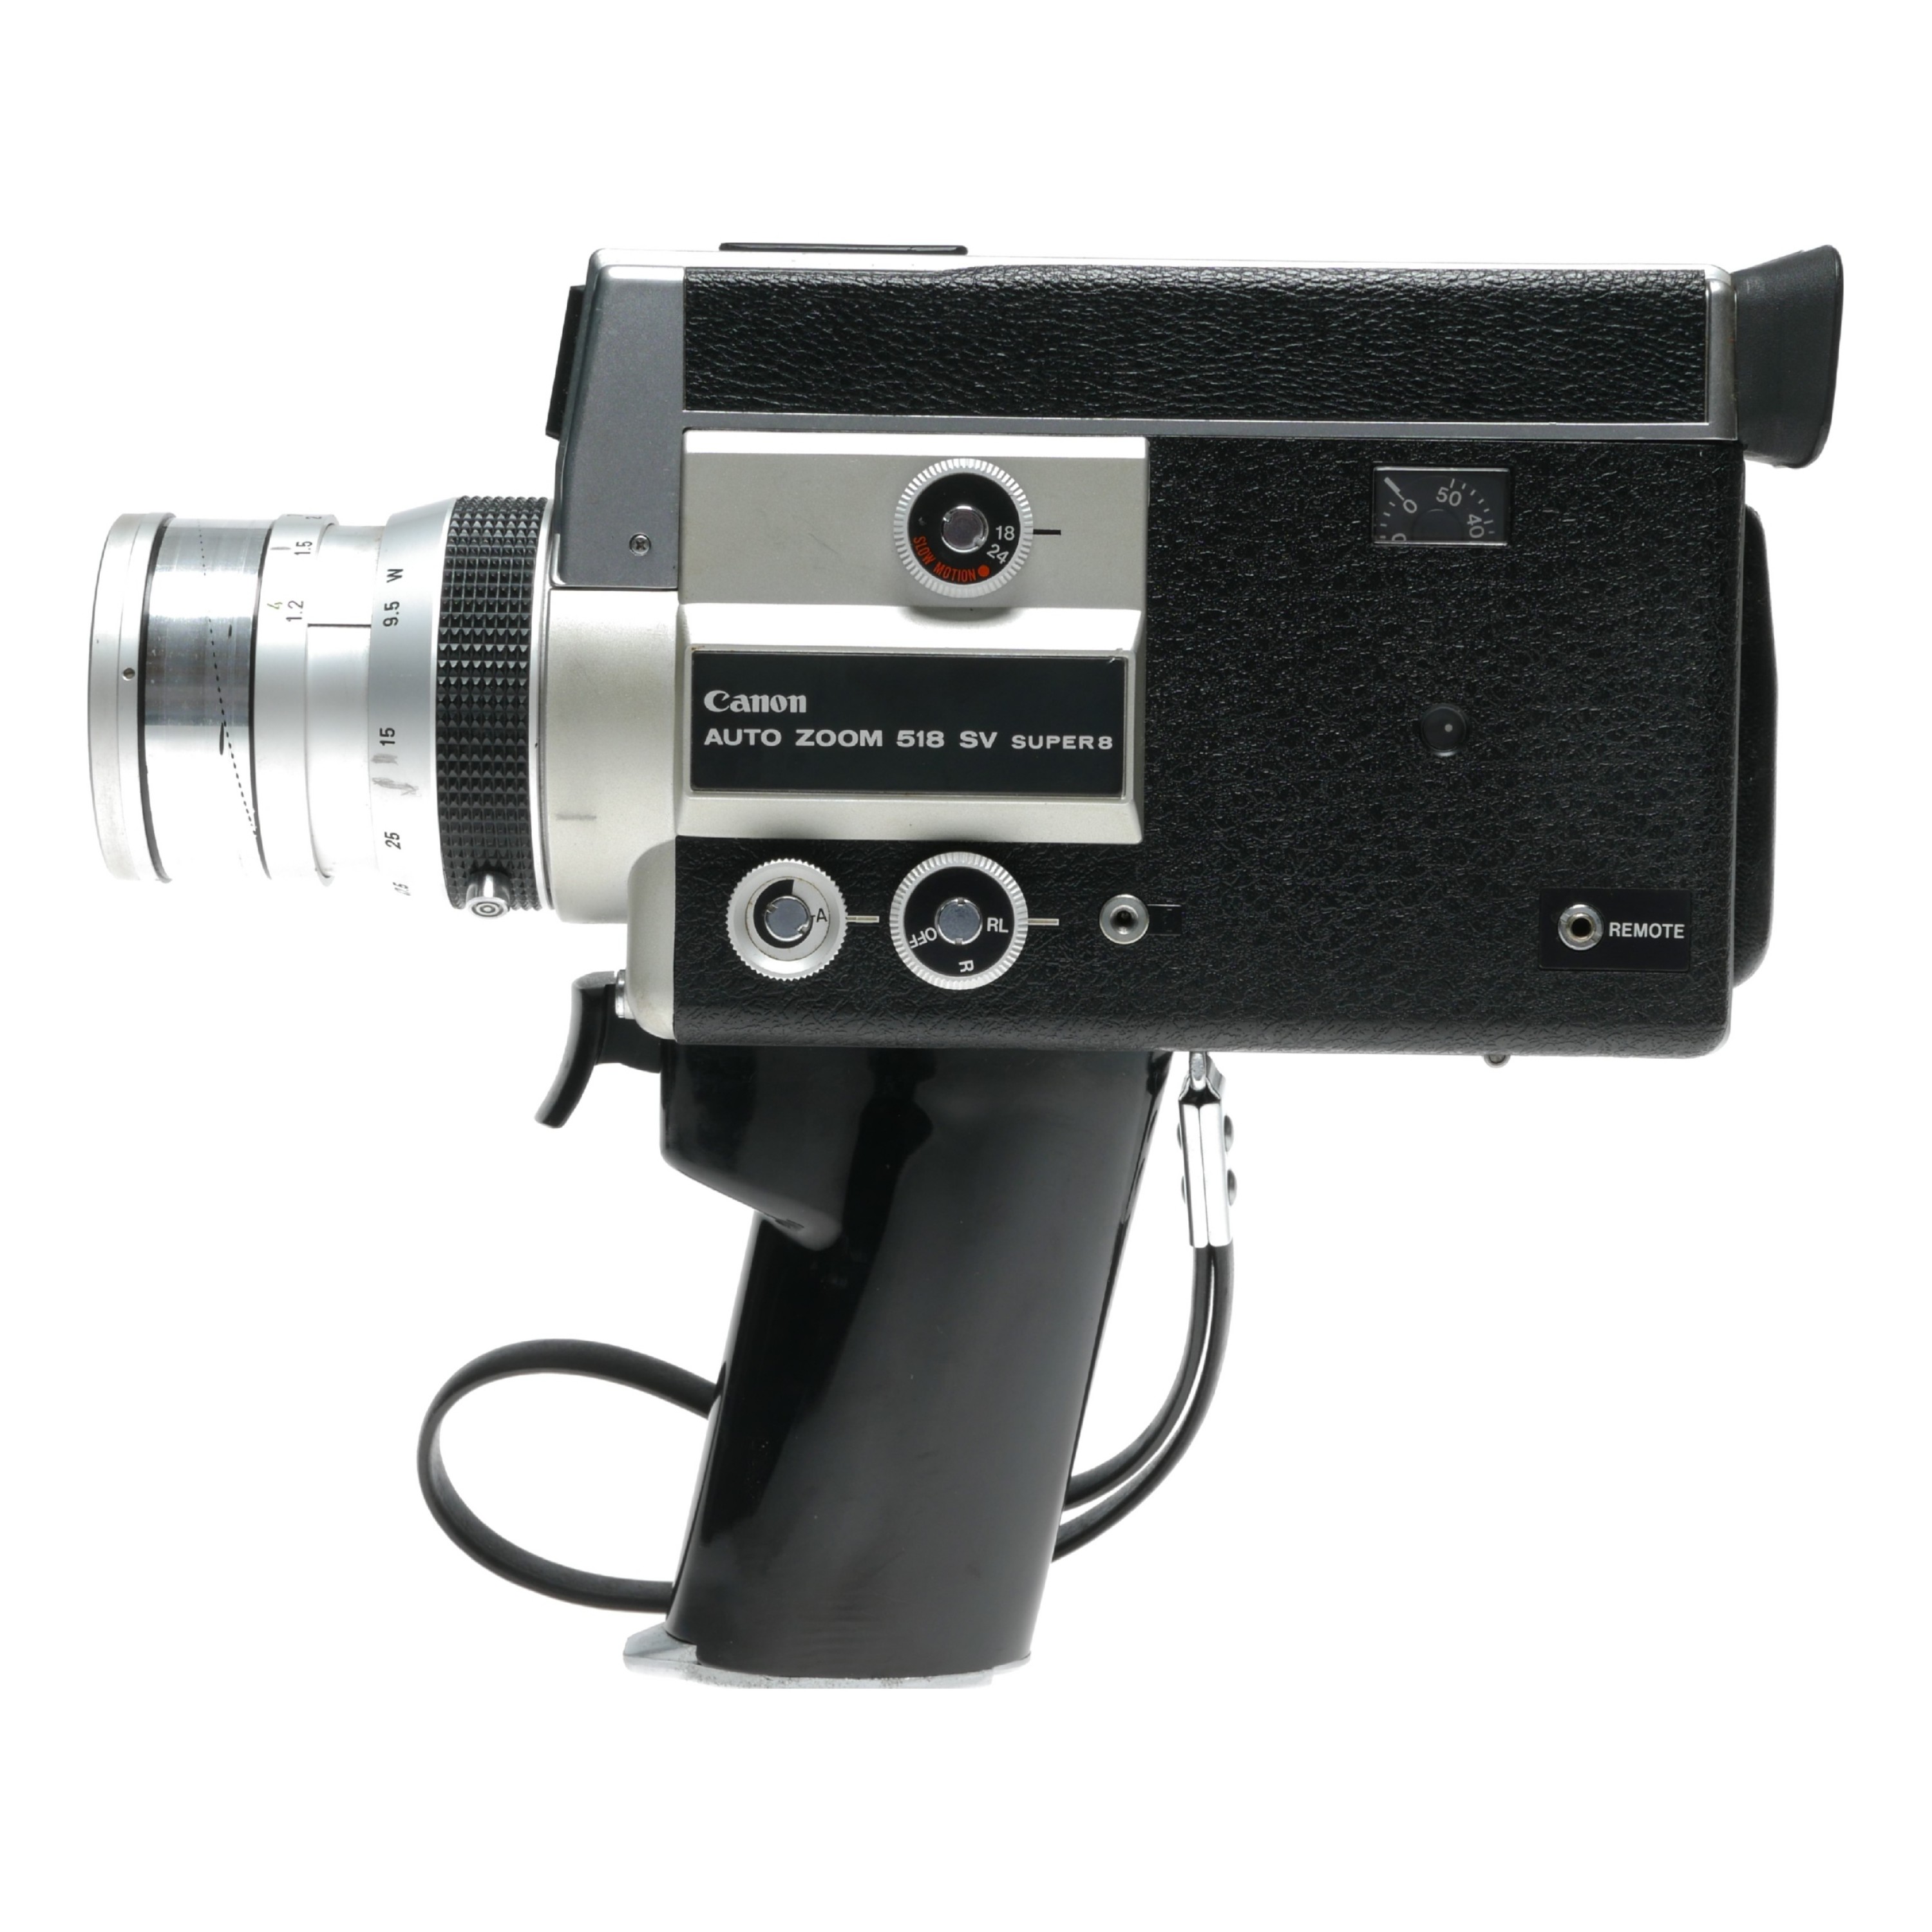 Canon Auto Zoom 518SV Super 8 Cine Film Camera Zoom C8 1:1.8